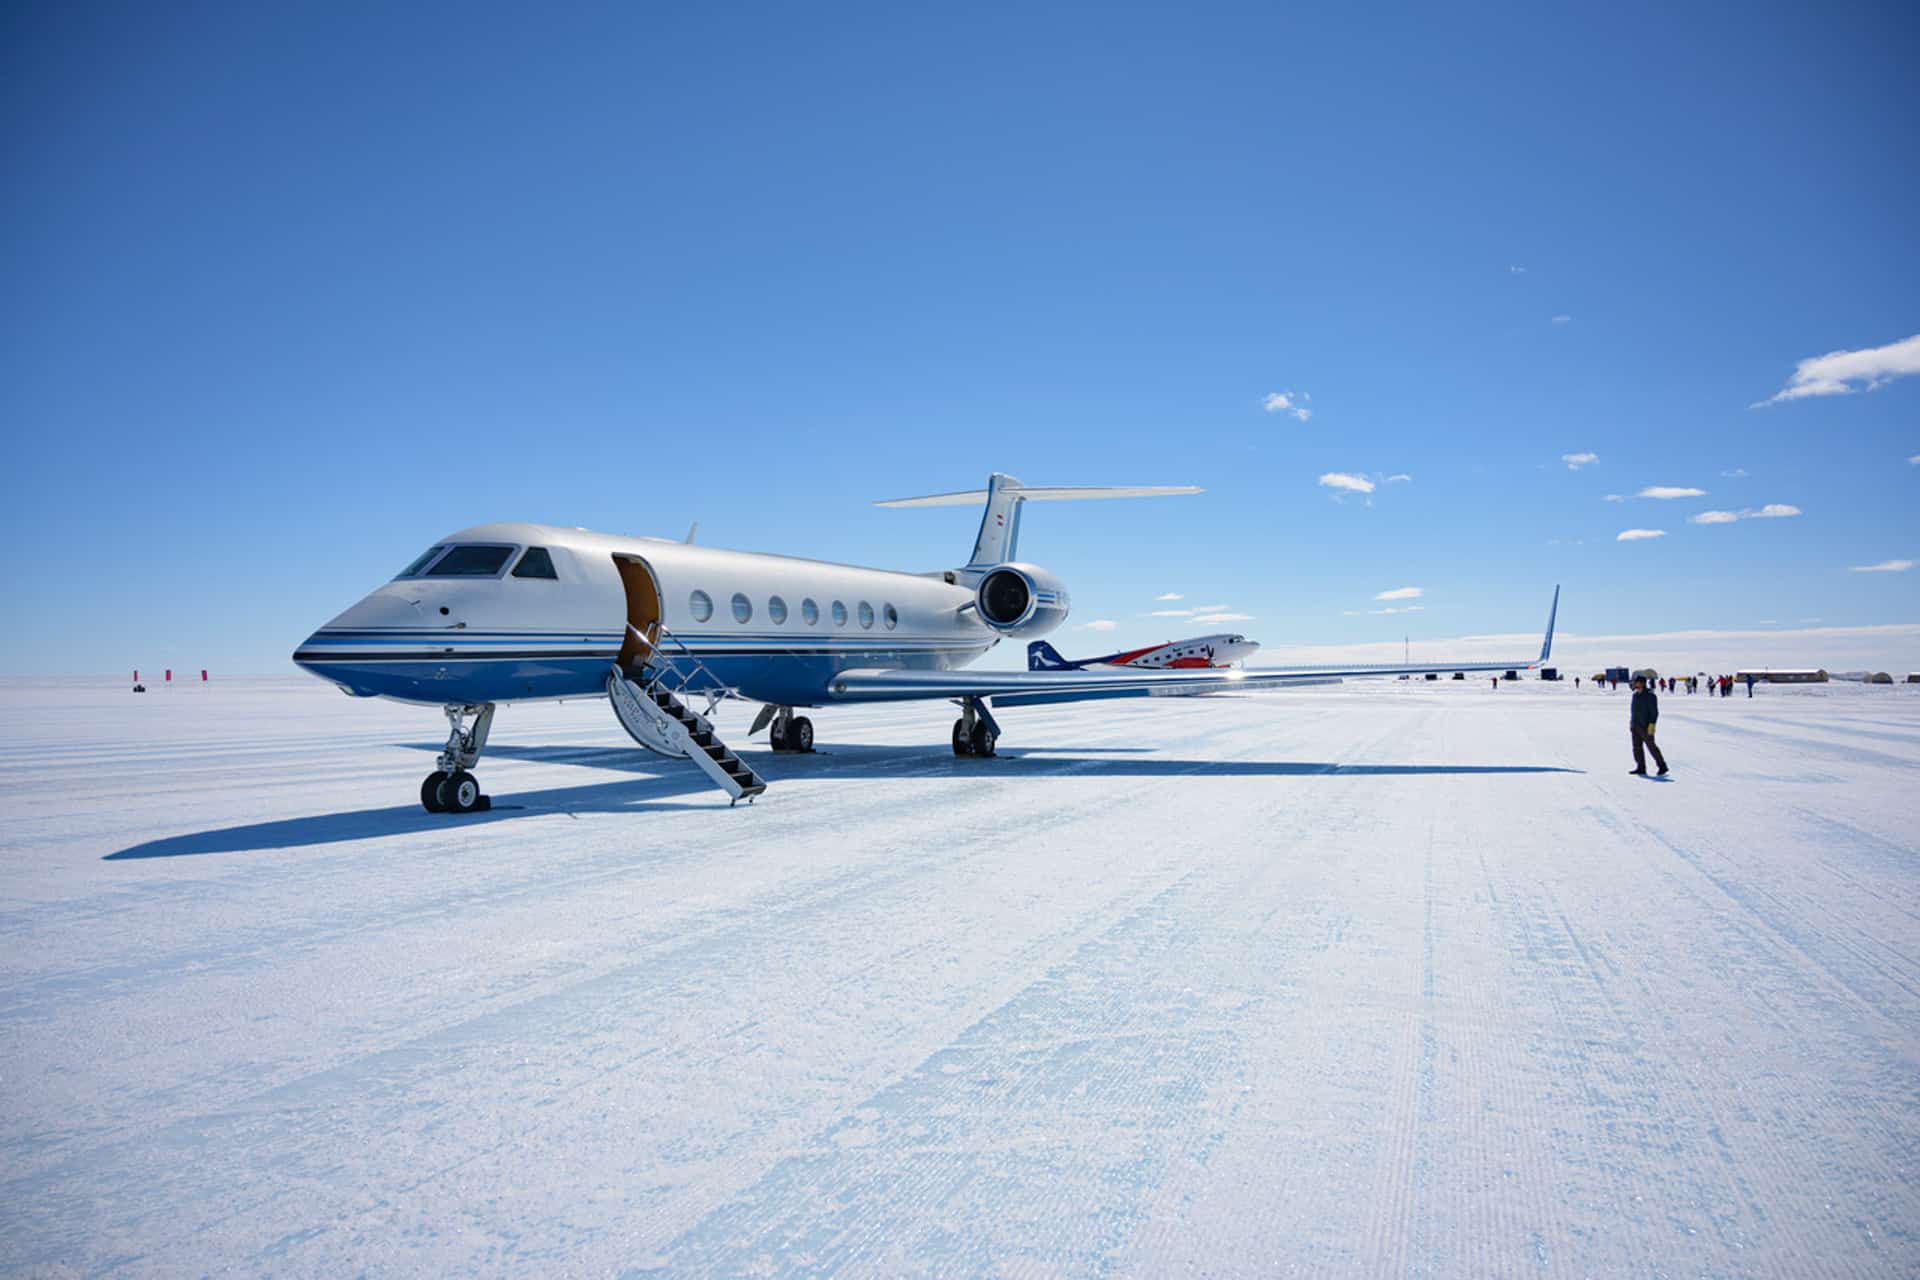 Gulfstream G550 on the ice runway at White Desert in Antarctica.